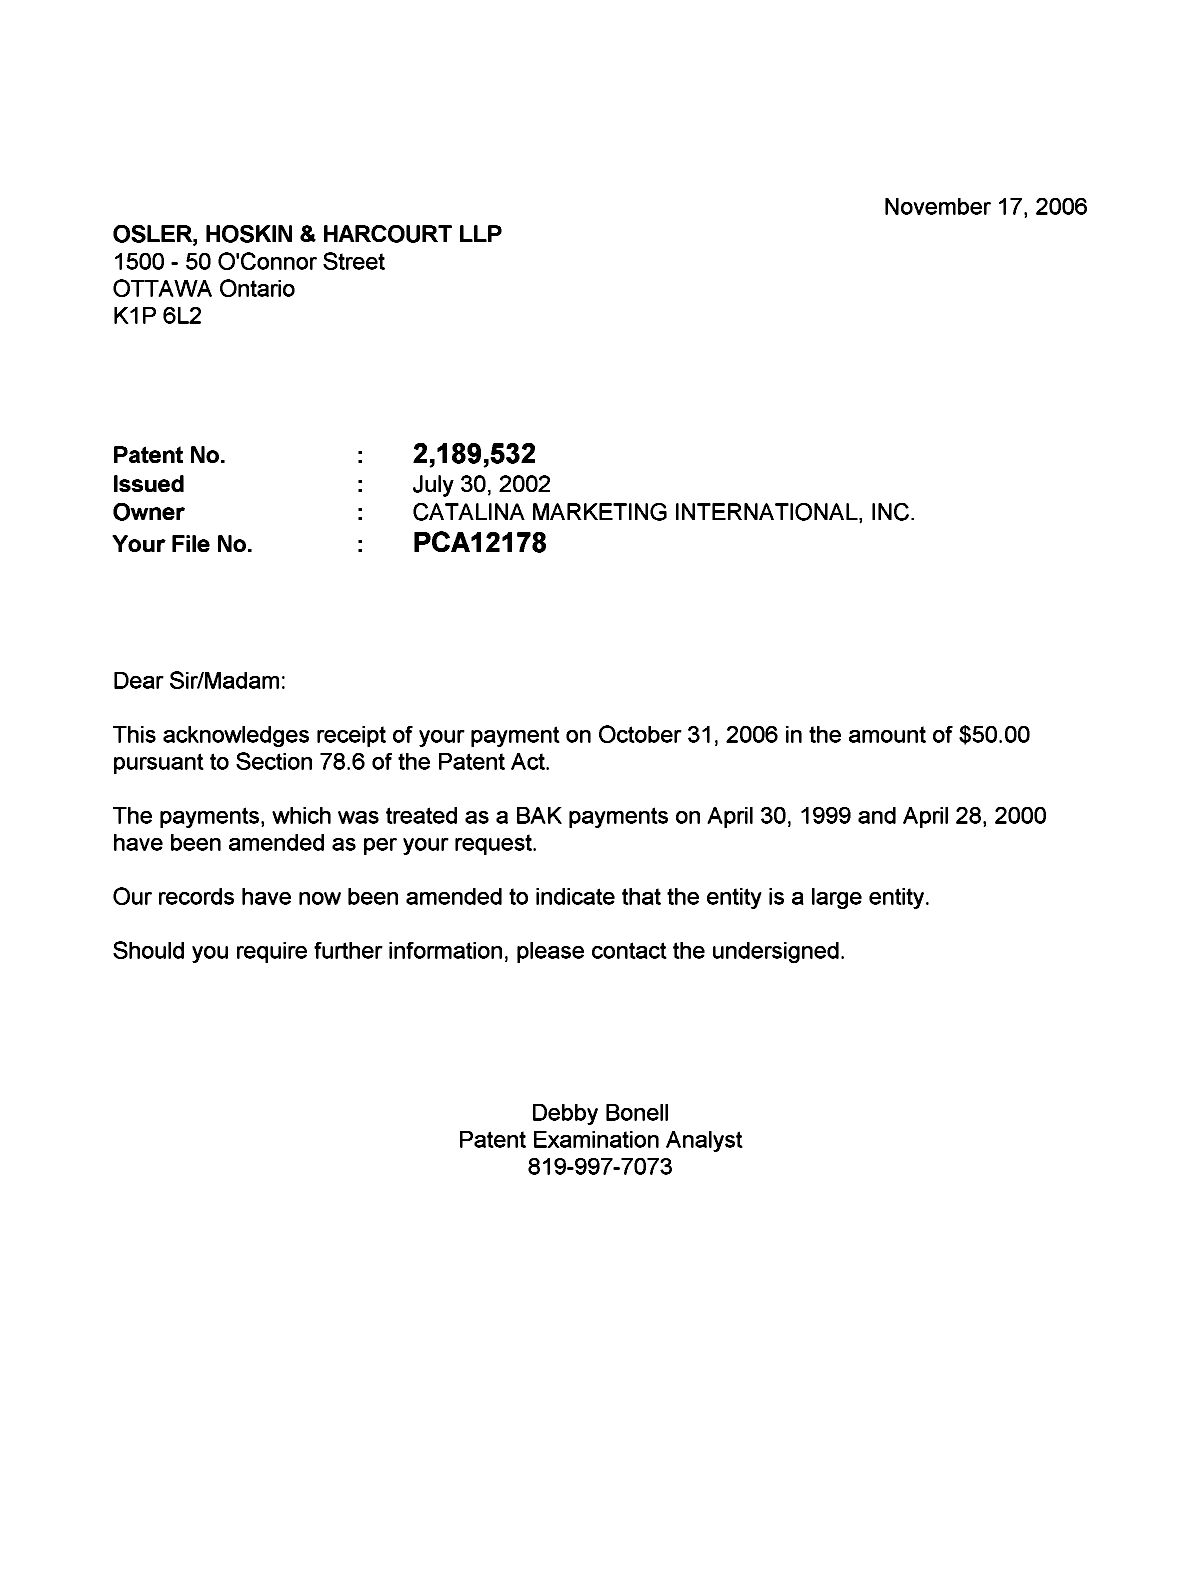 Document de brevet canadien 2189532. Correspondance 20061117. Image 1 de 1